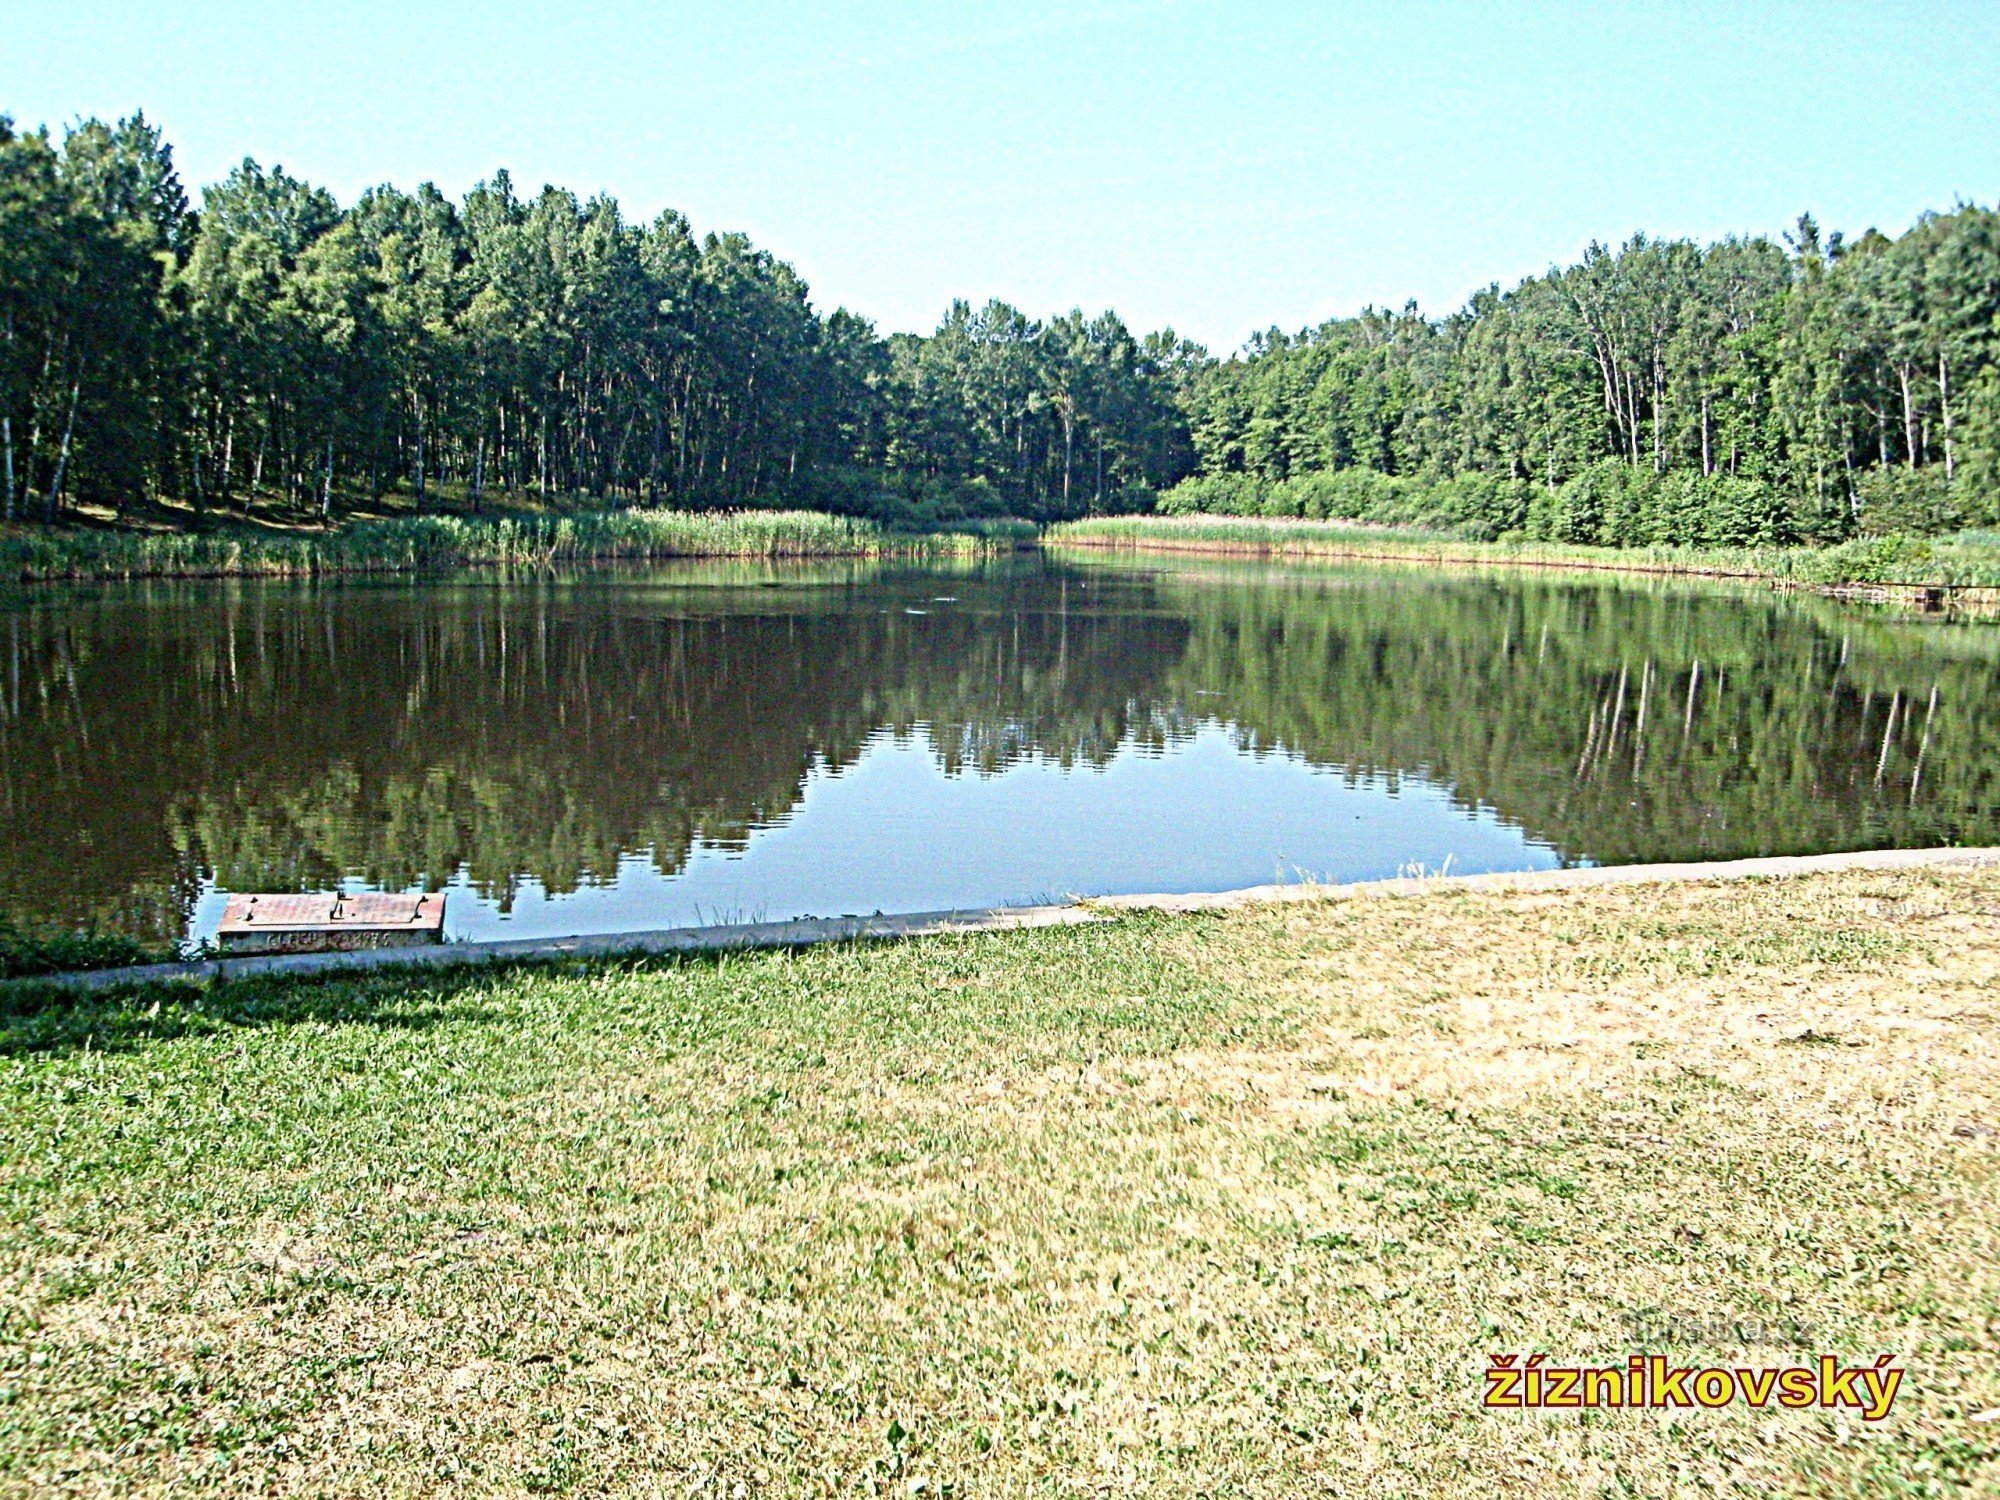 estanque Žíznikovský